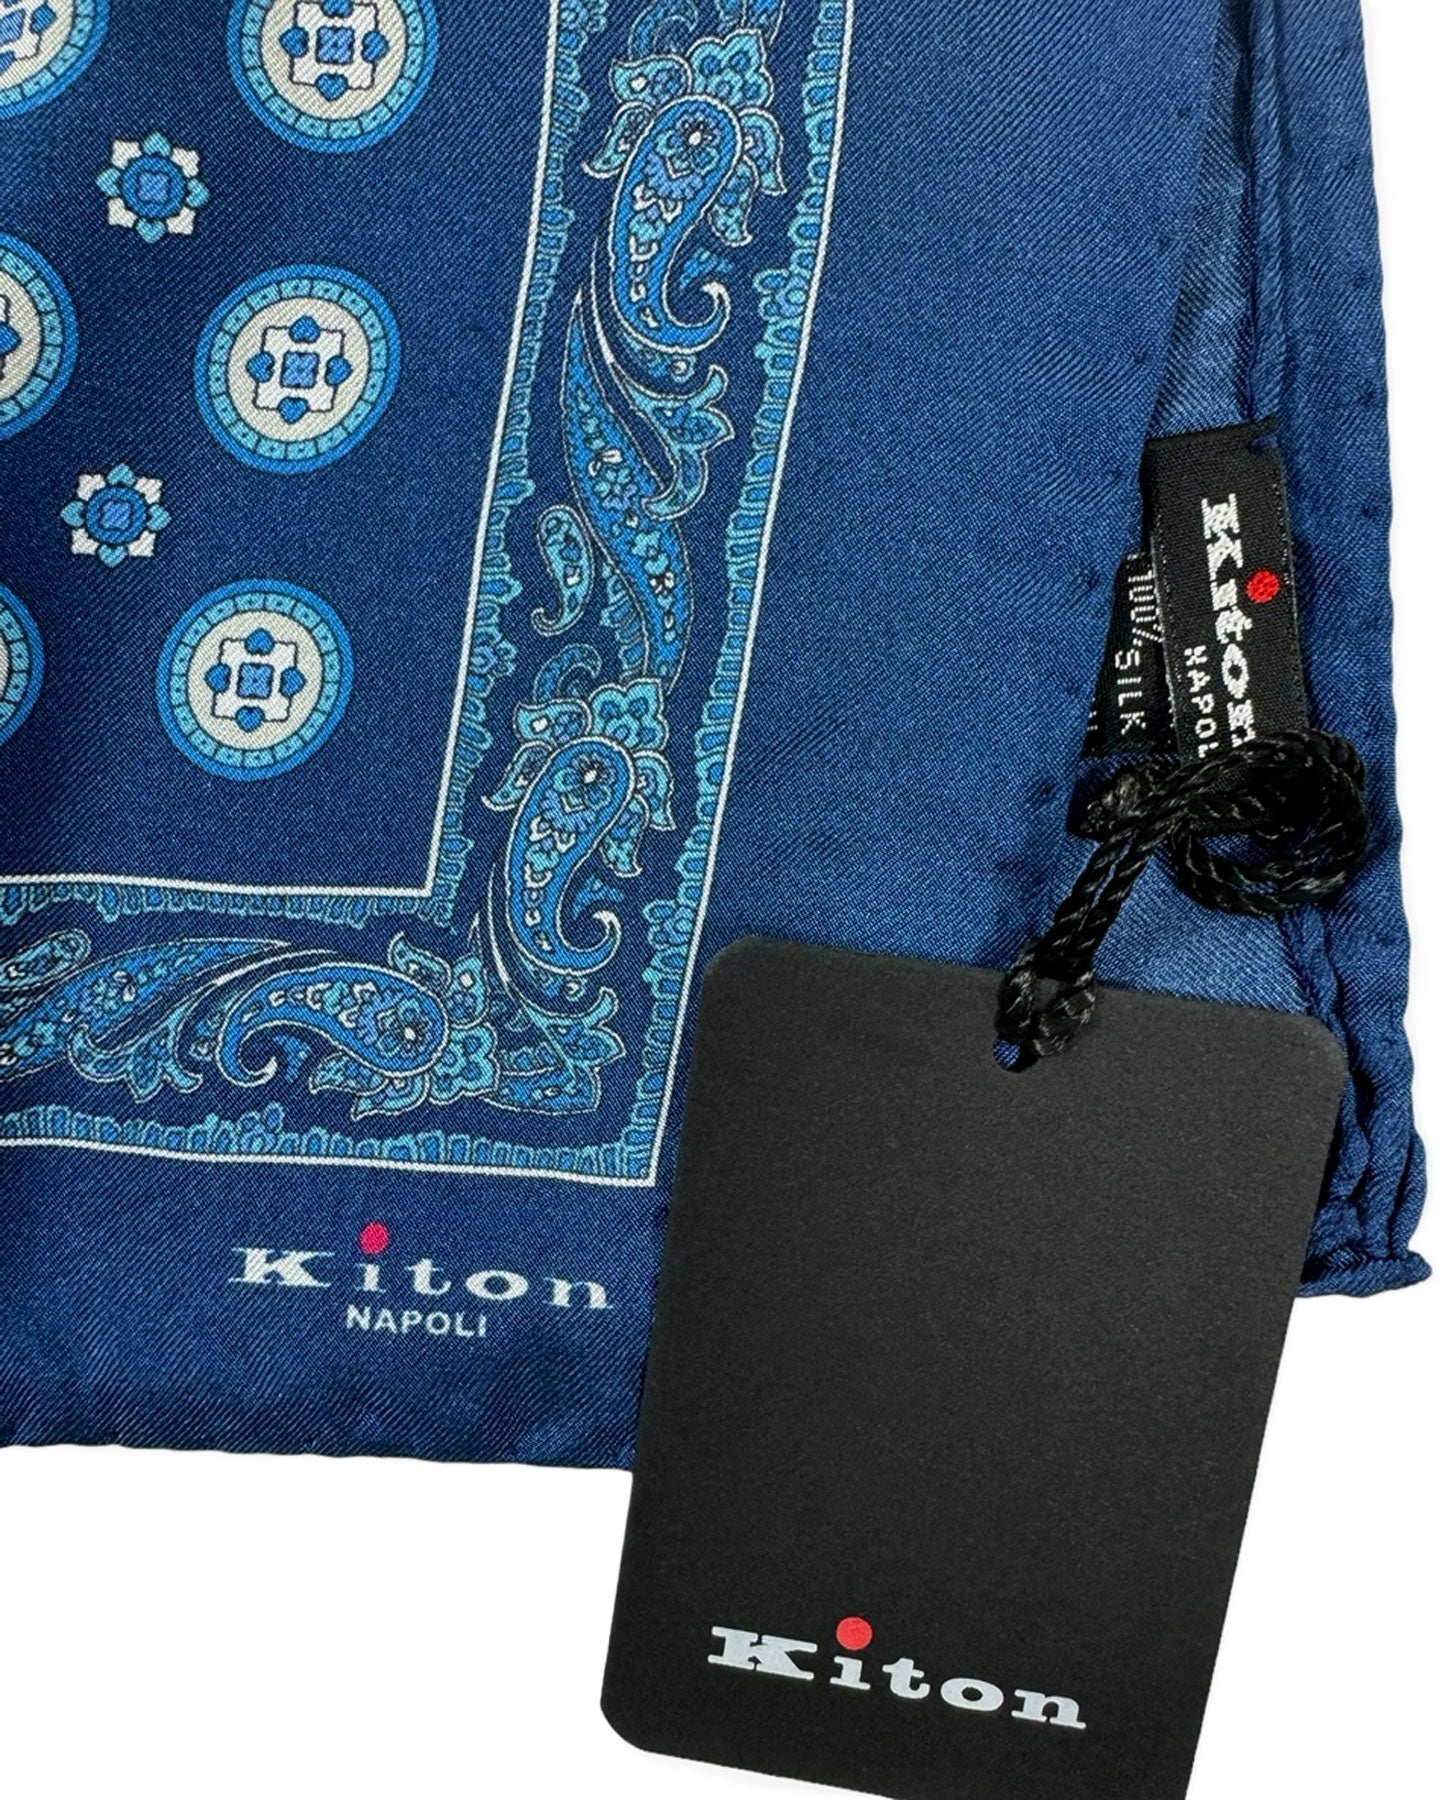 Kiton Silk Pocket Square Navy Blue Medallions